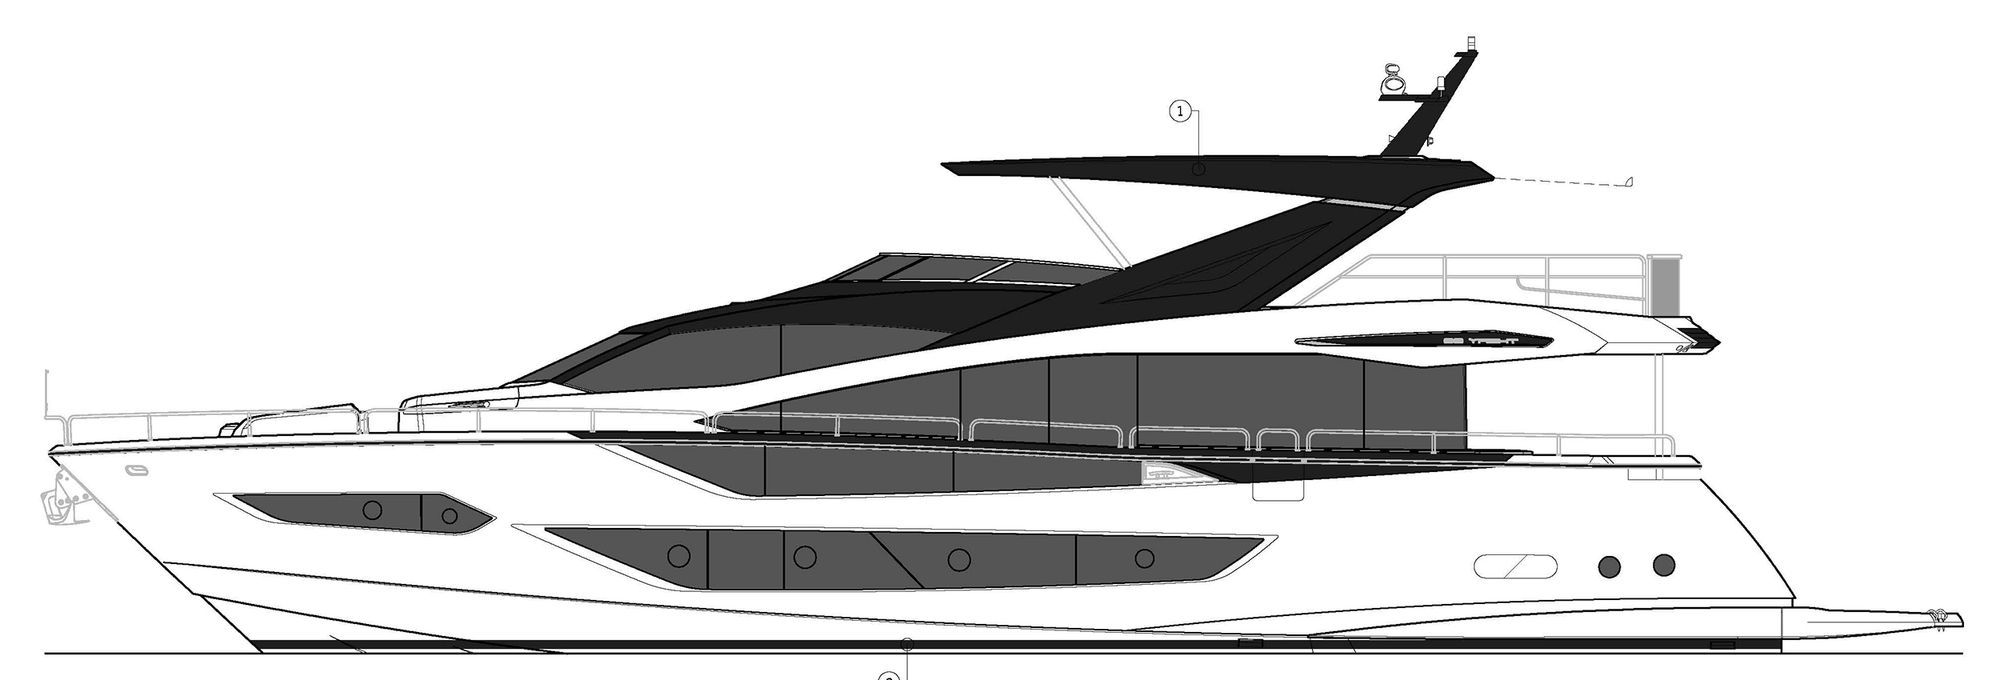 sunseeker 88 yacht